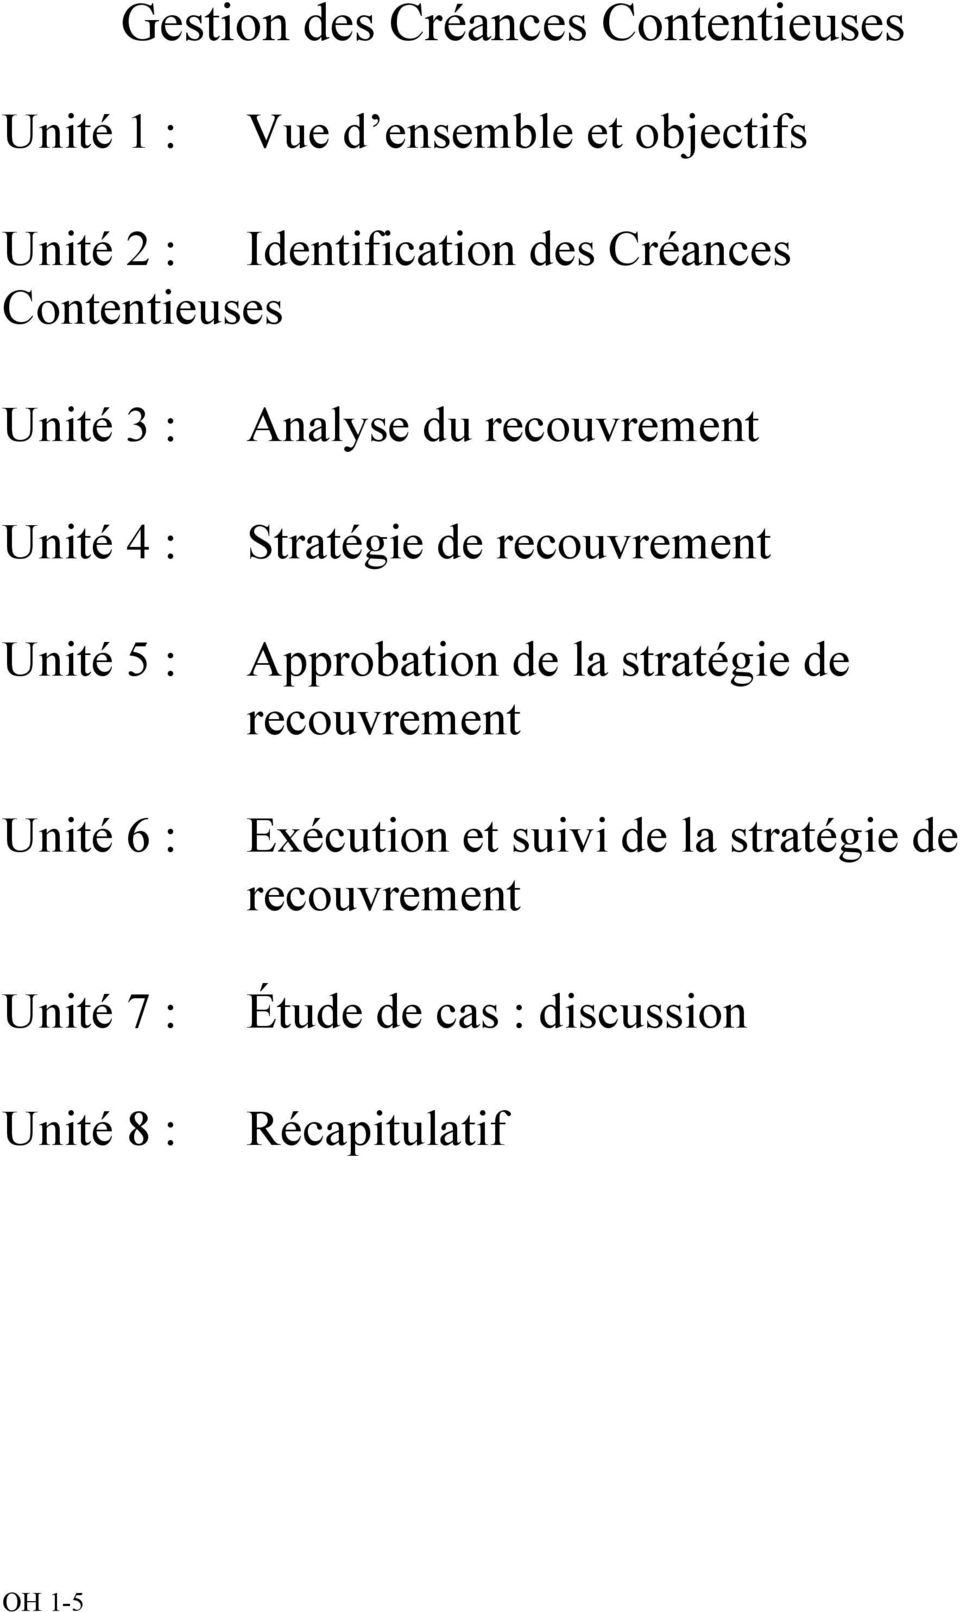 Unité 8 : Analyse du recouvrement Stratégie de recouvrement Approbation de la stratégie de